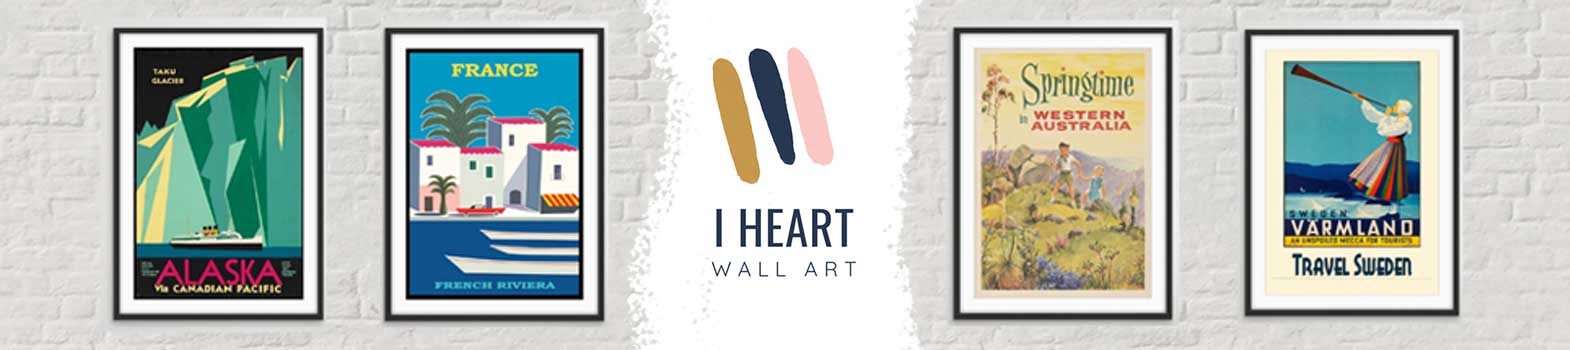 I Heart Wall Art